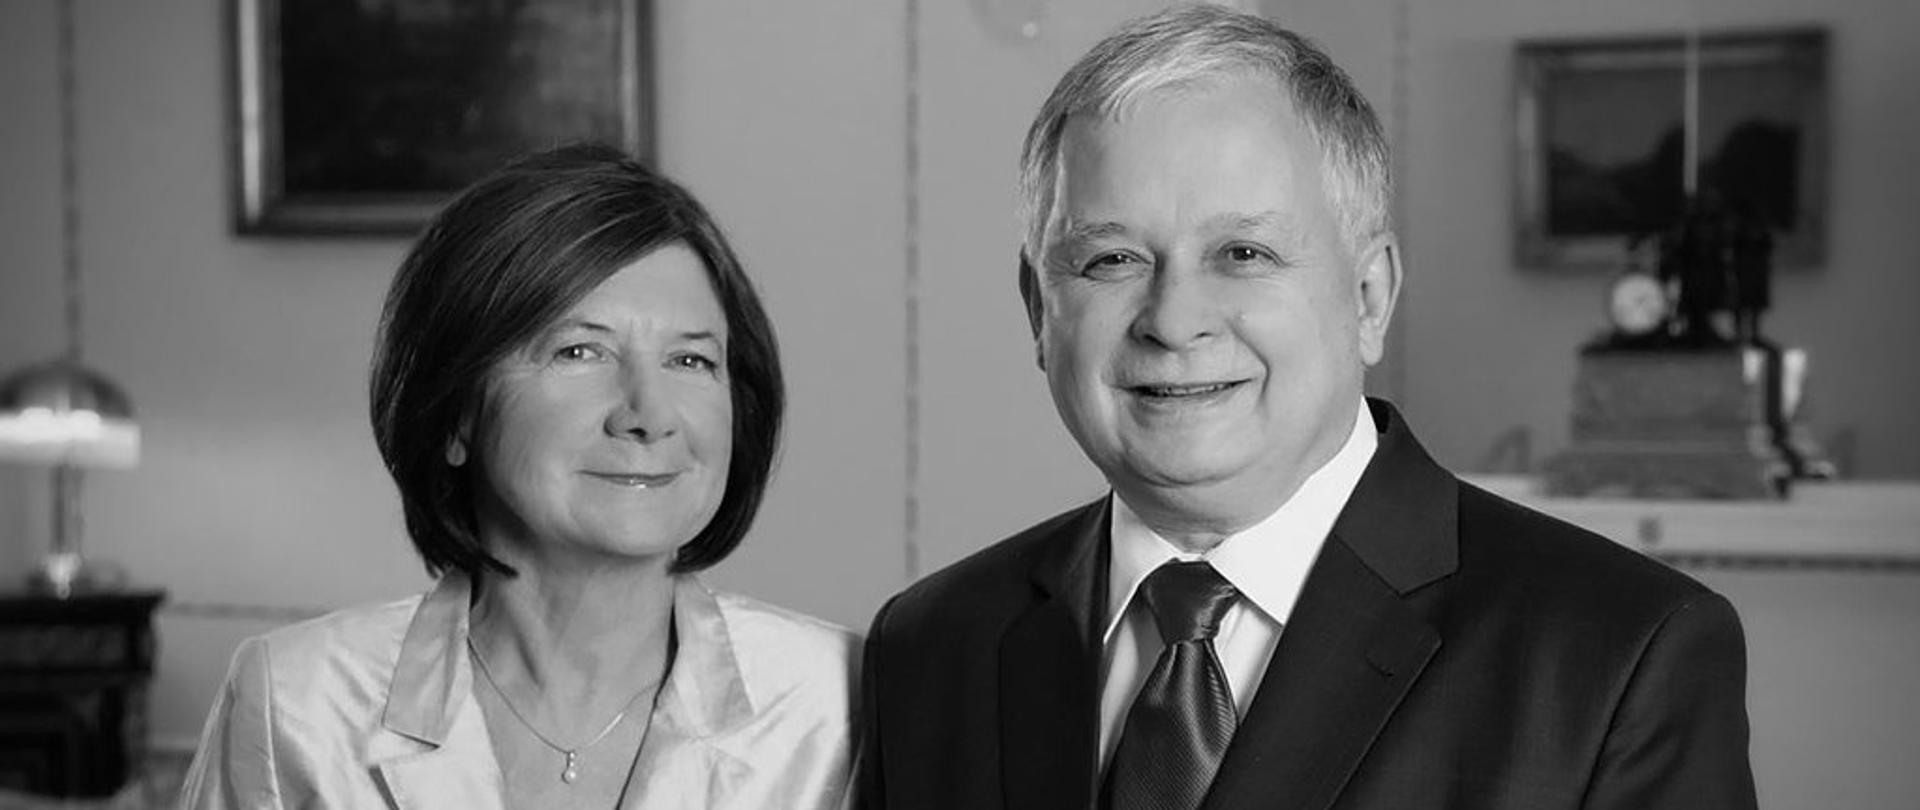 President of the Republic of Poland Lech Kaczyński with wife Maria Kaczyńska